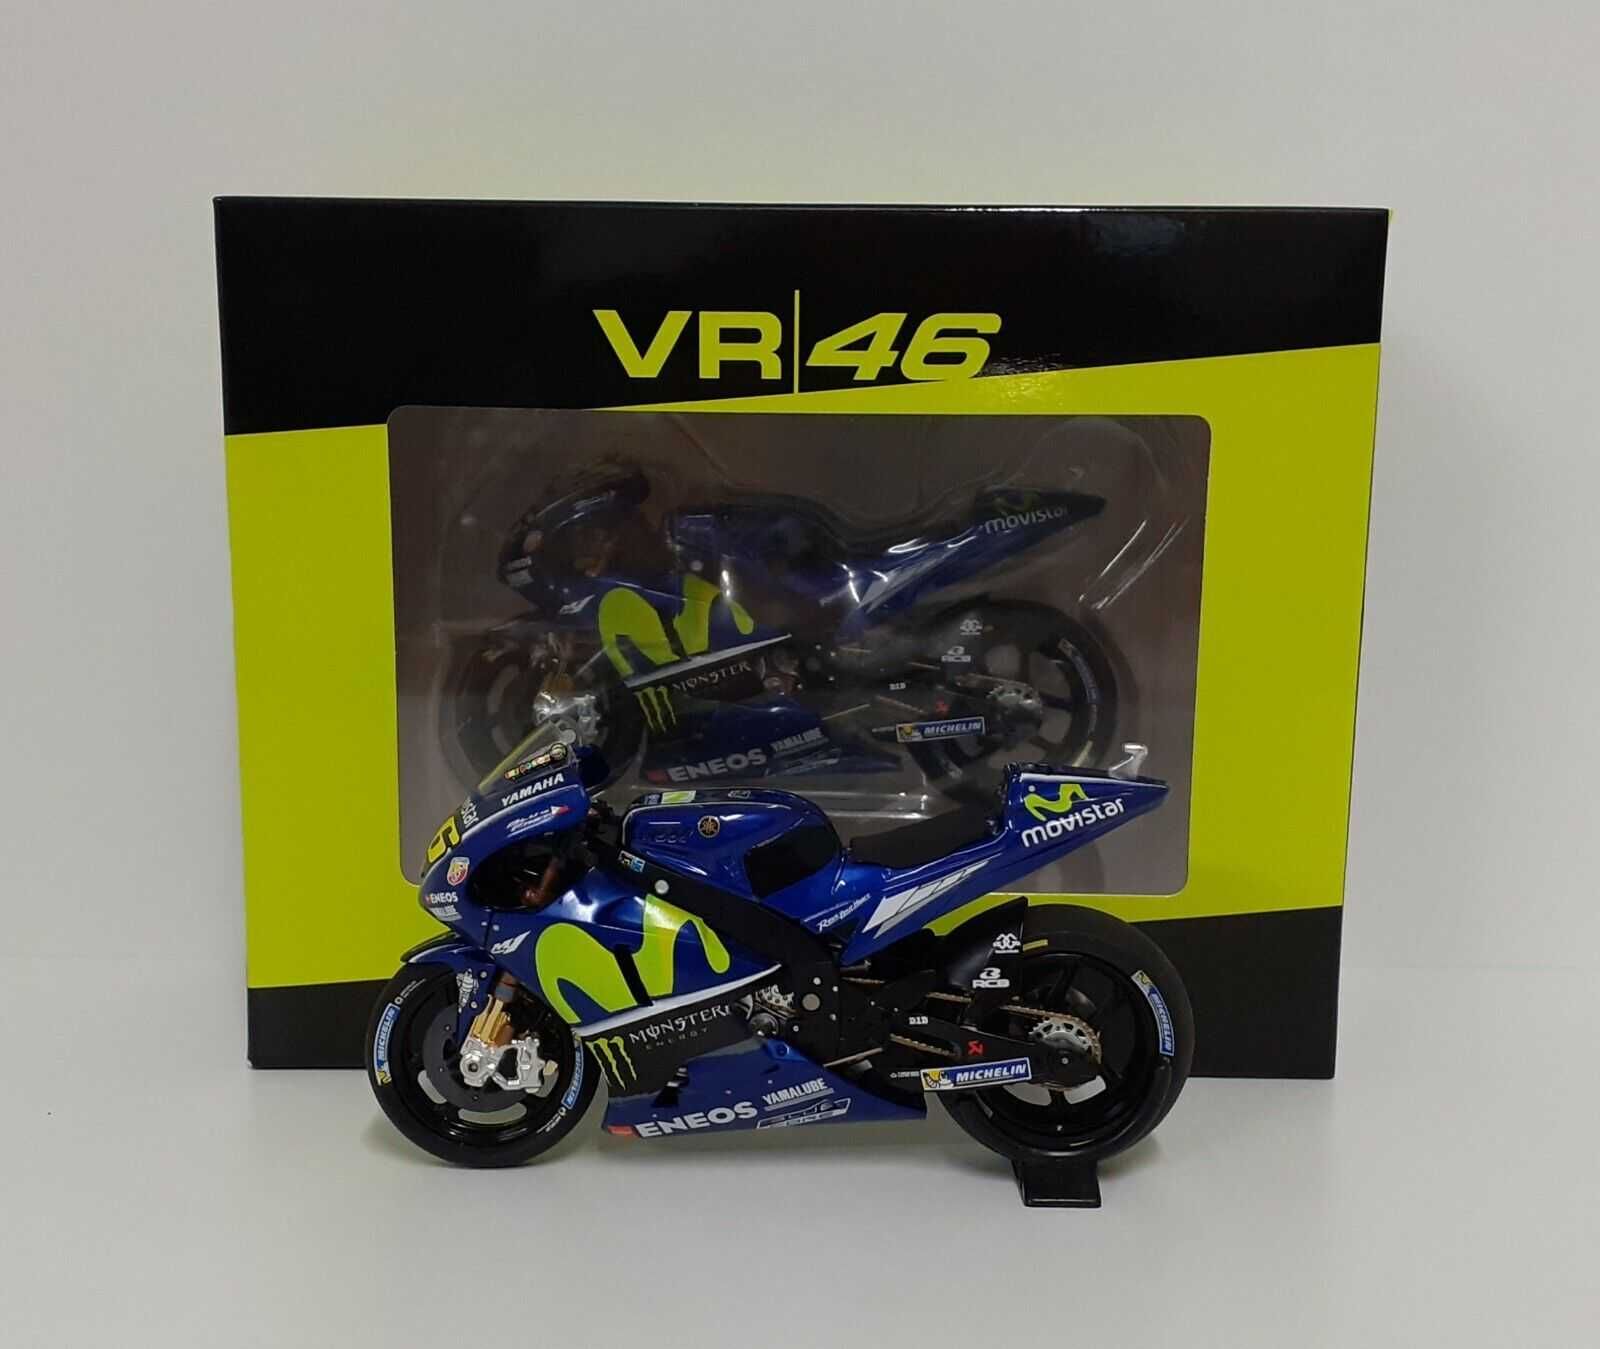 Miniatura 1:18 -Valentino Rossi Yamaha YZR-M1 #46 - Winner MotoGP